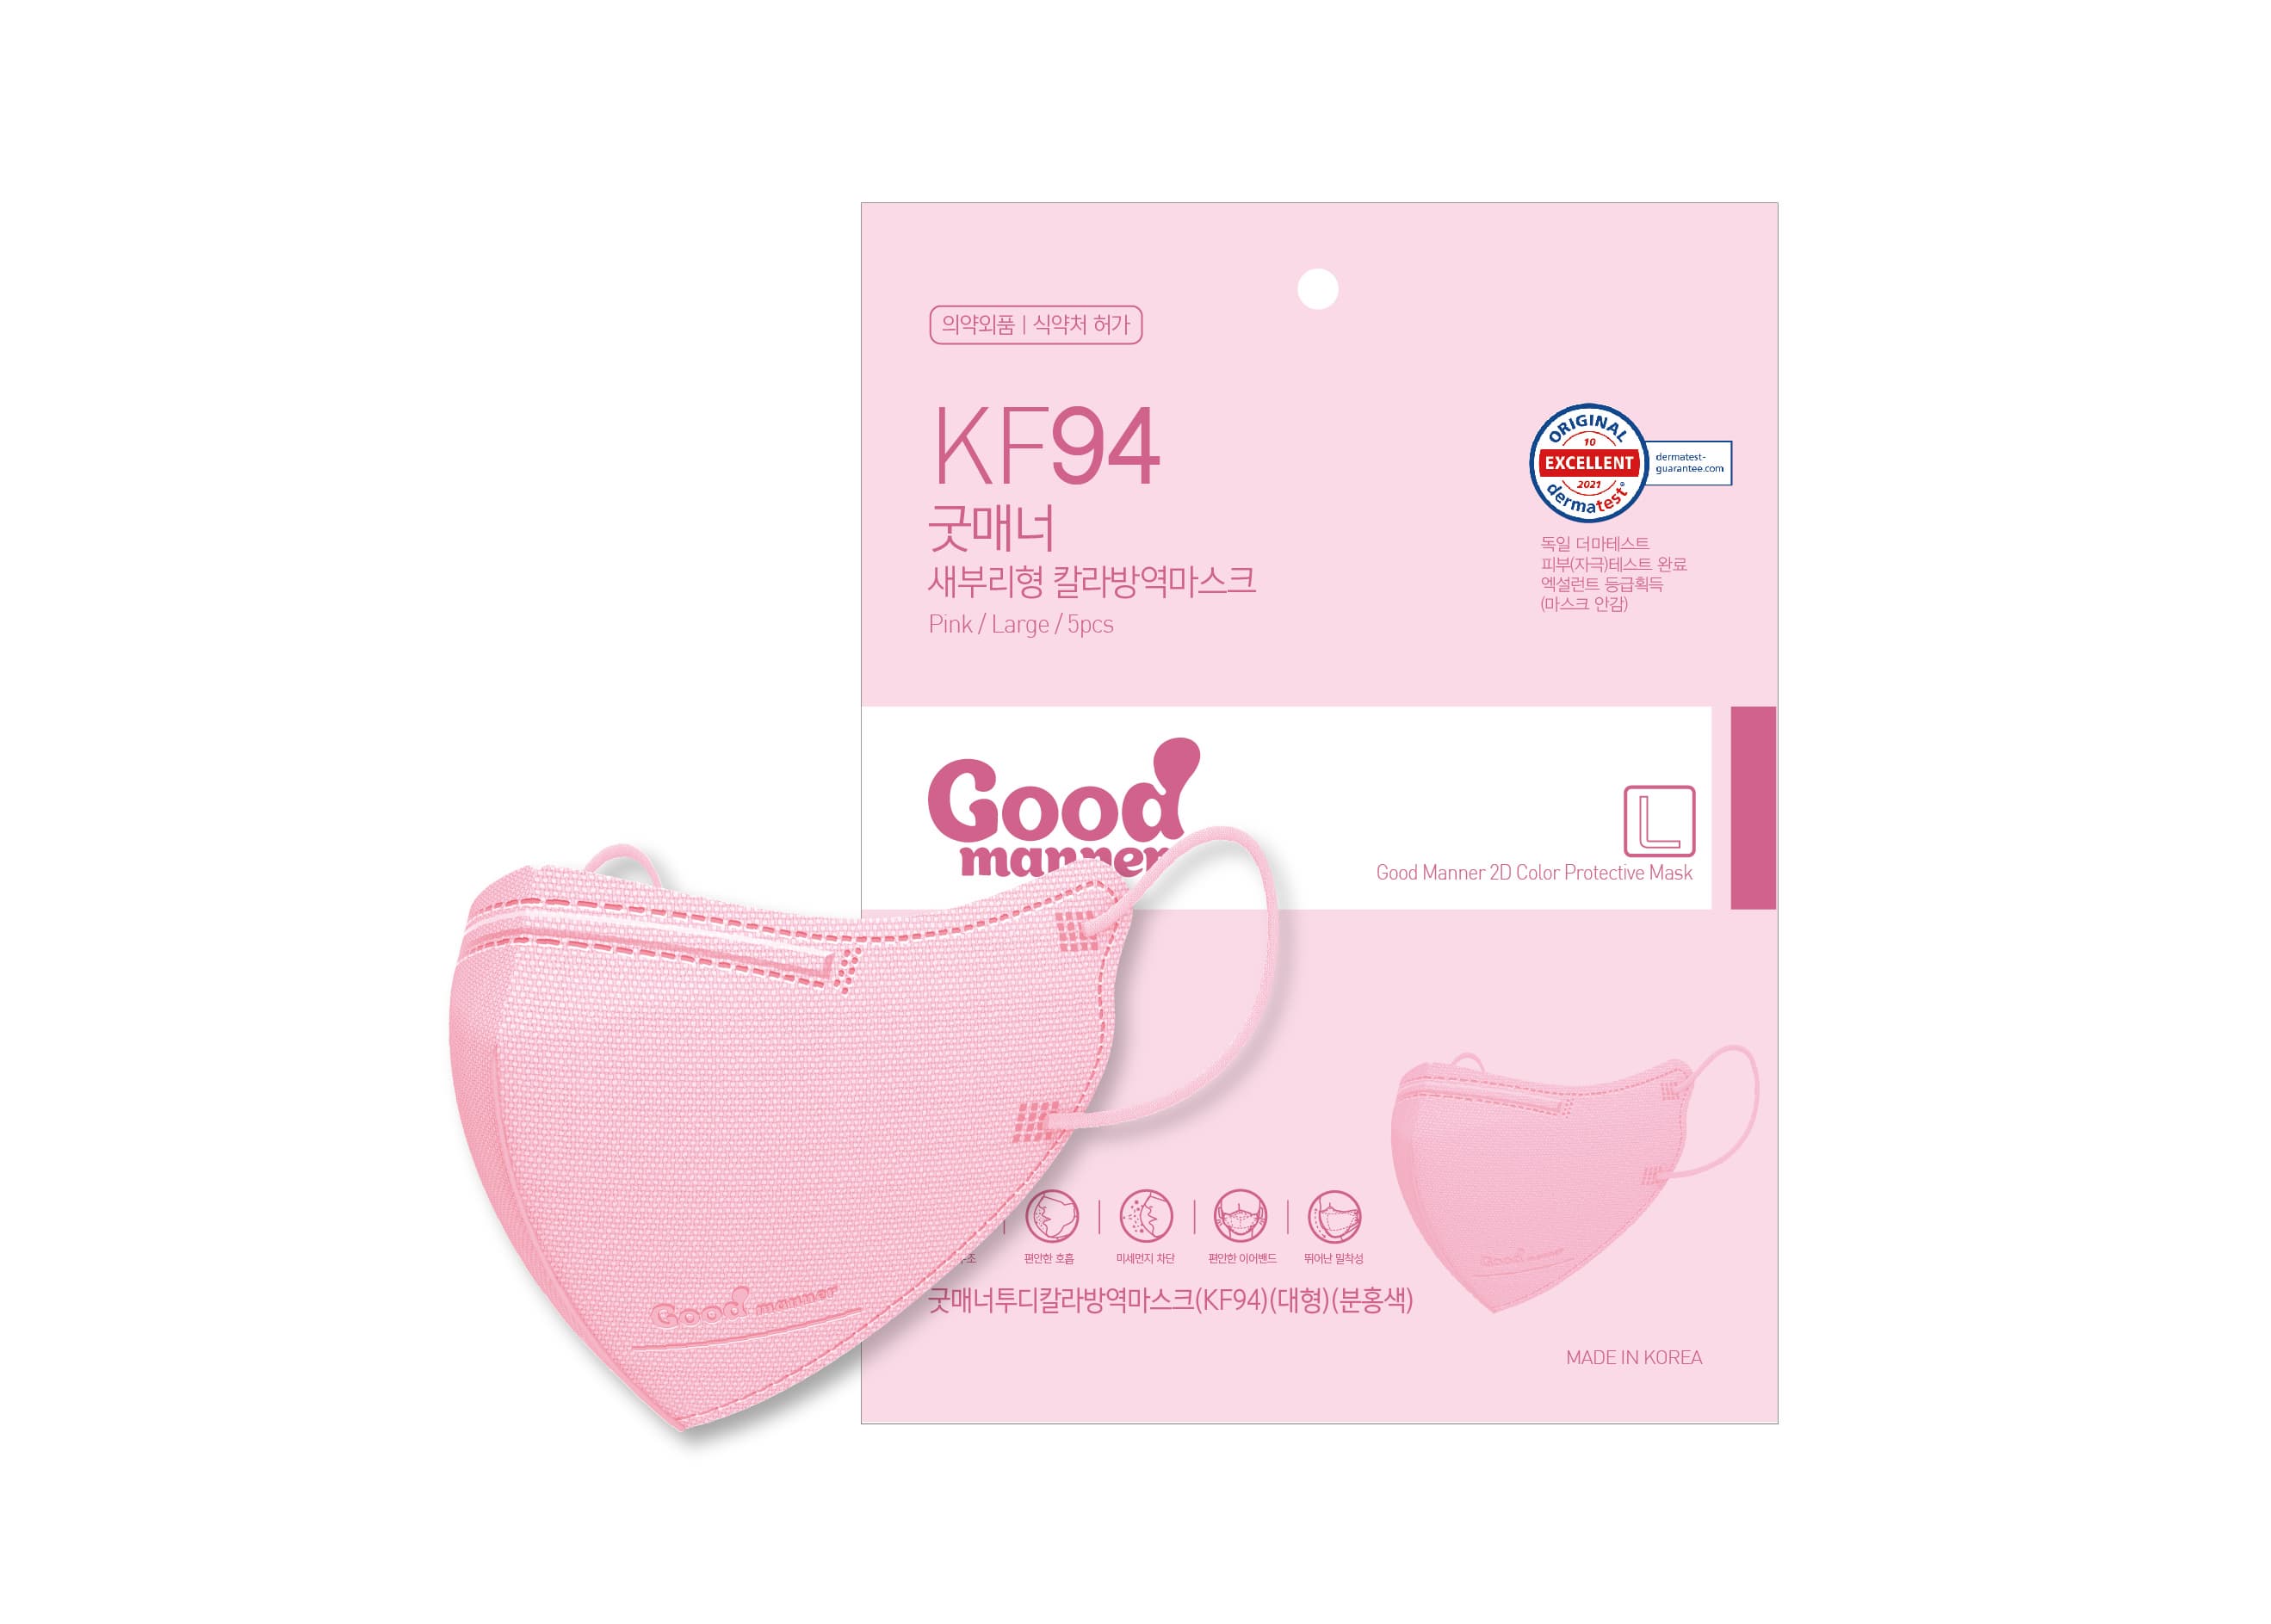 Good Manner 2D Mask KF94 _Pink_Large_